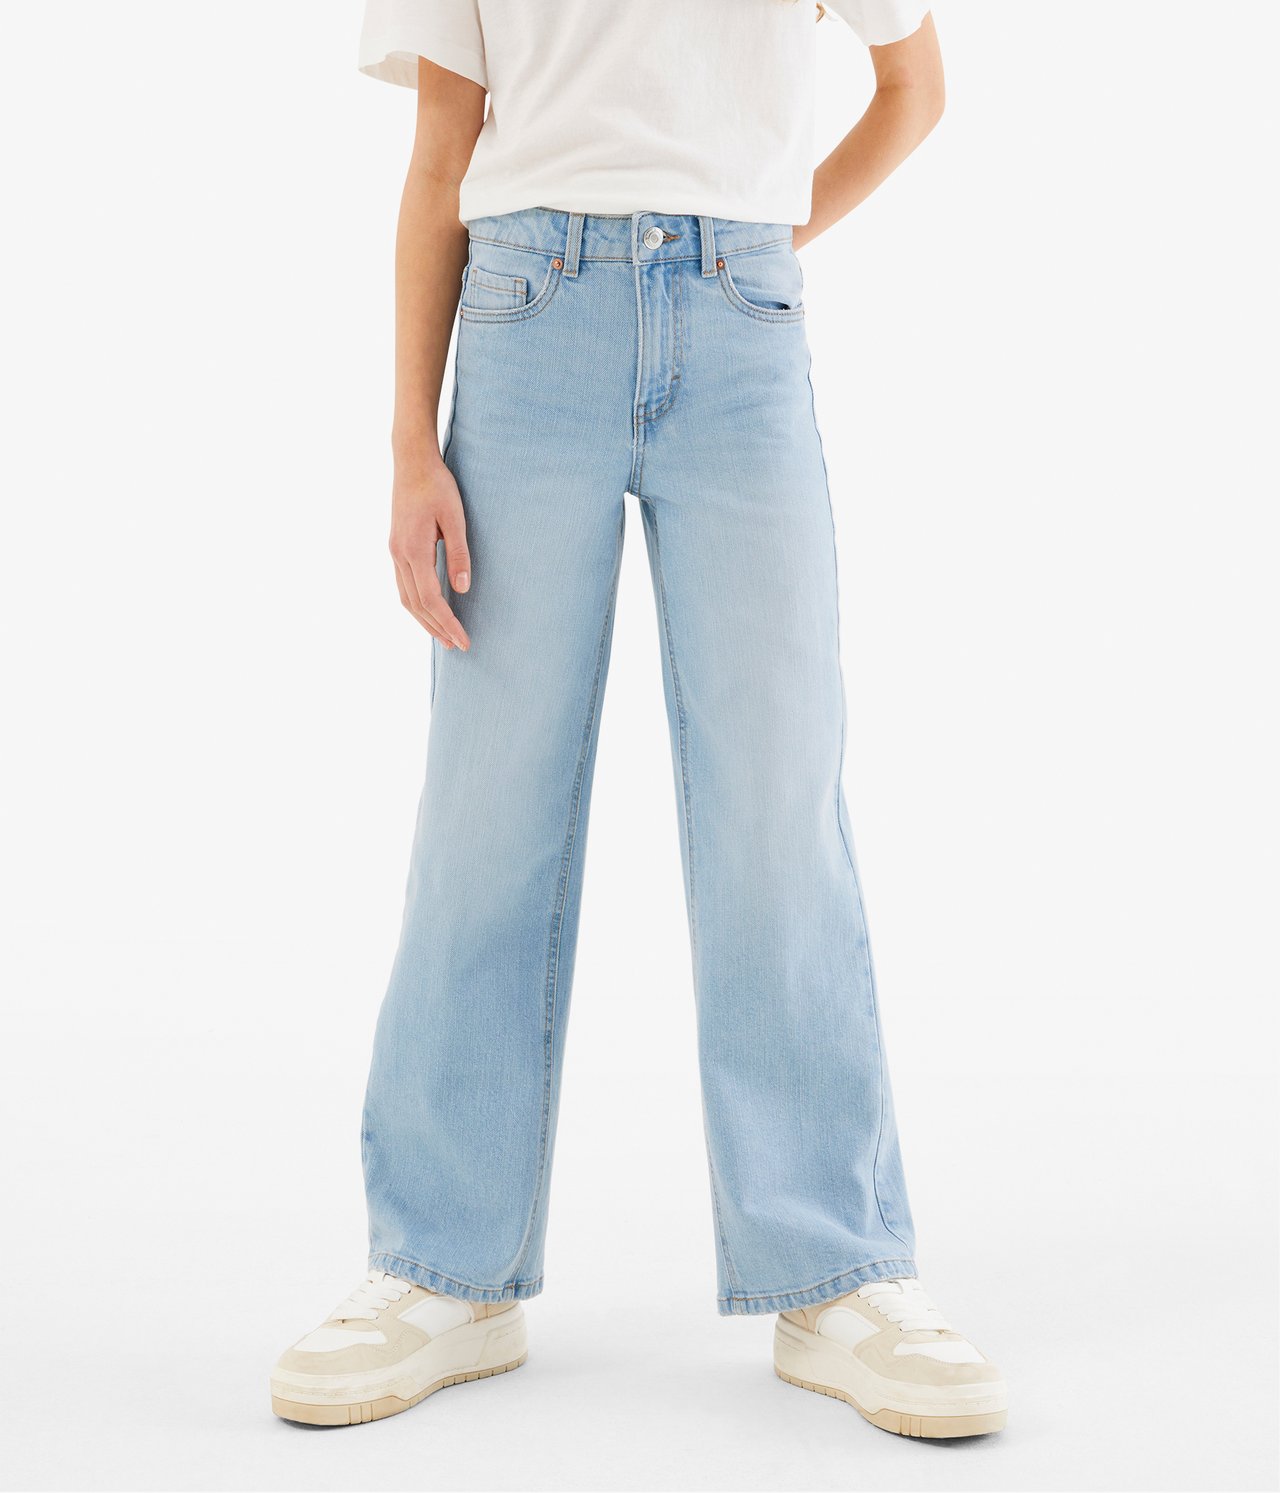 Jeans wide fit mid waist - Jasny dżins - 2